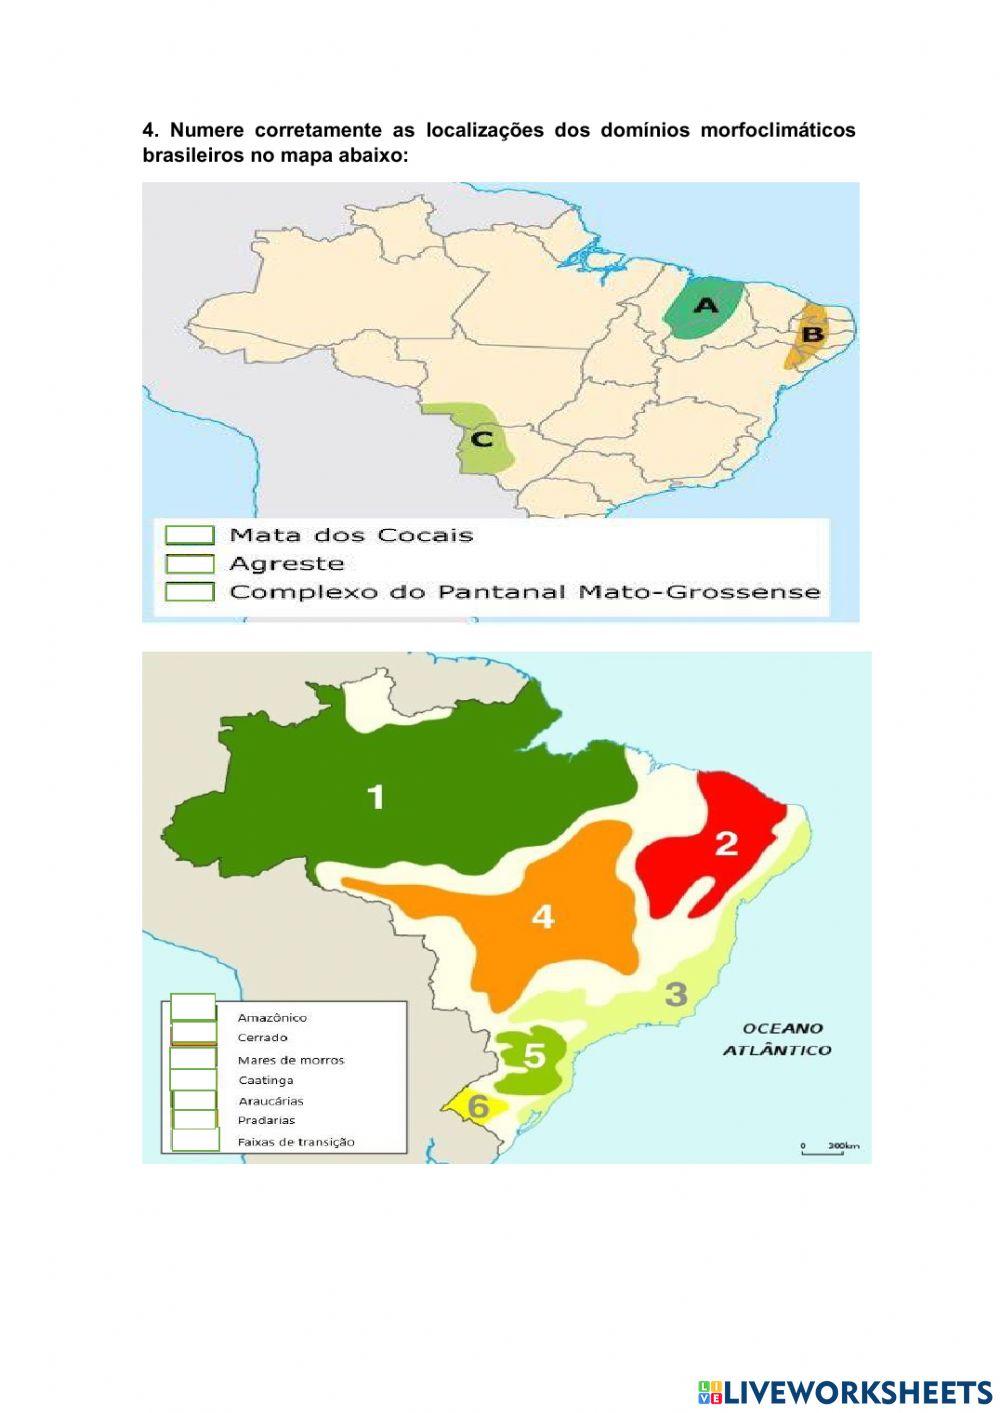 Domínio morfoclimático brasileiro